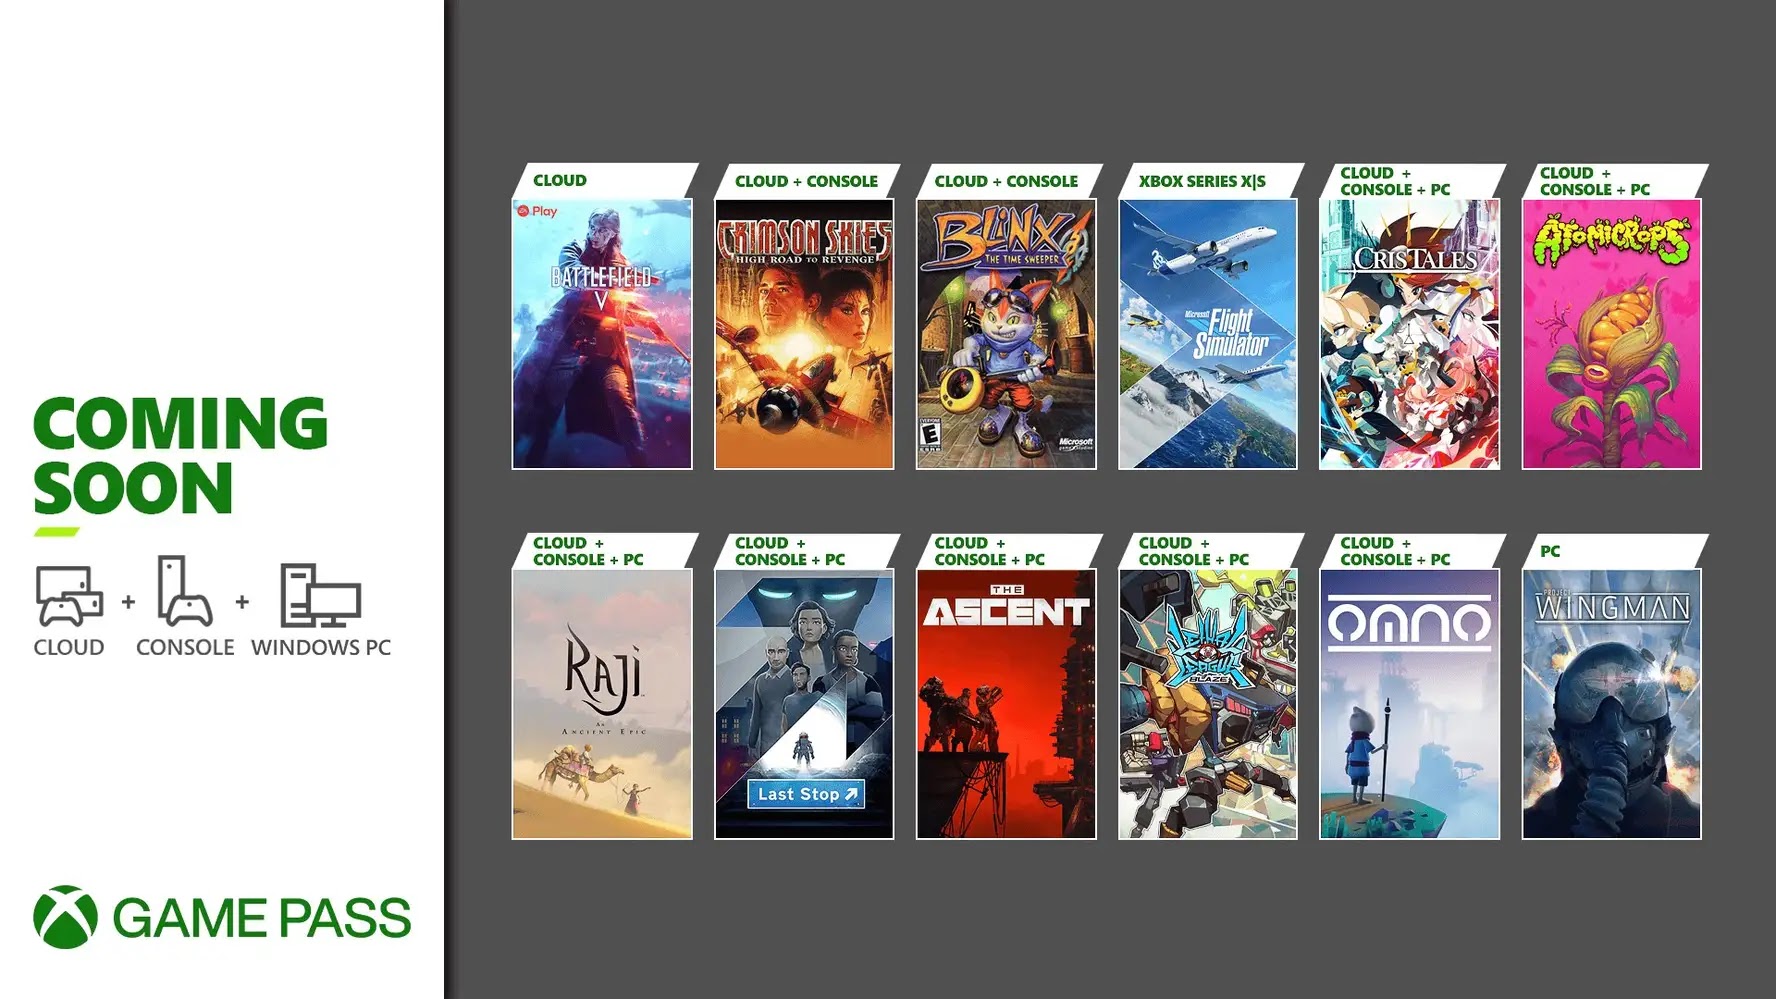 Os Melhores Jogos de Corrida Xbox Game Pass